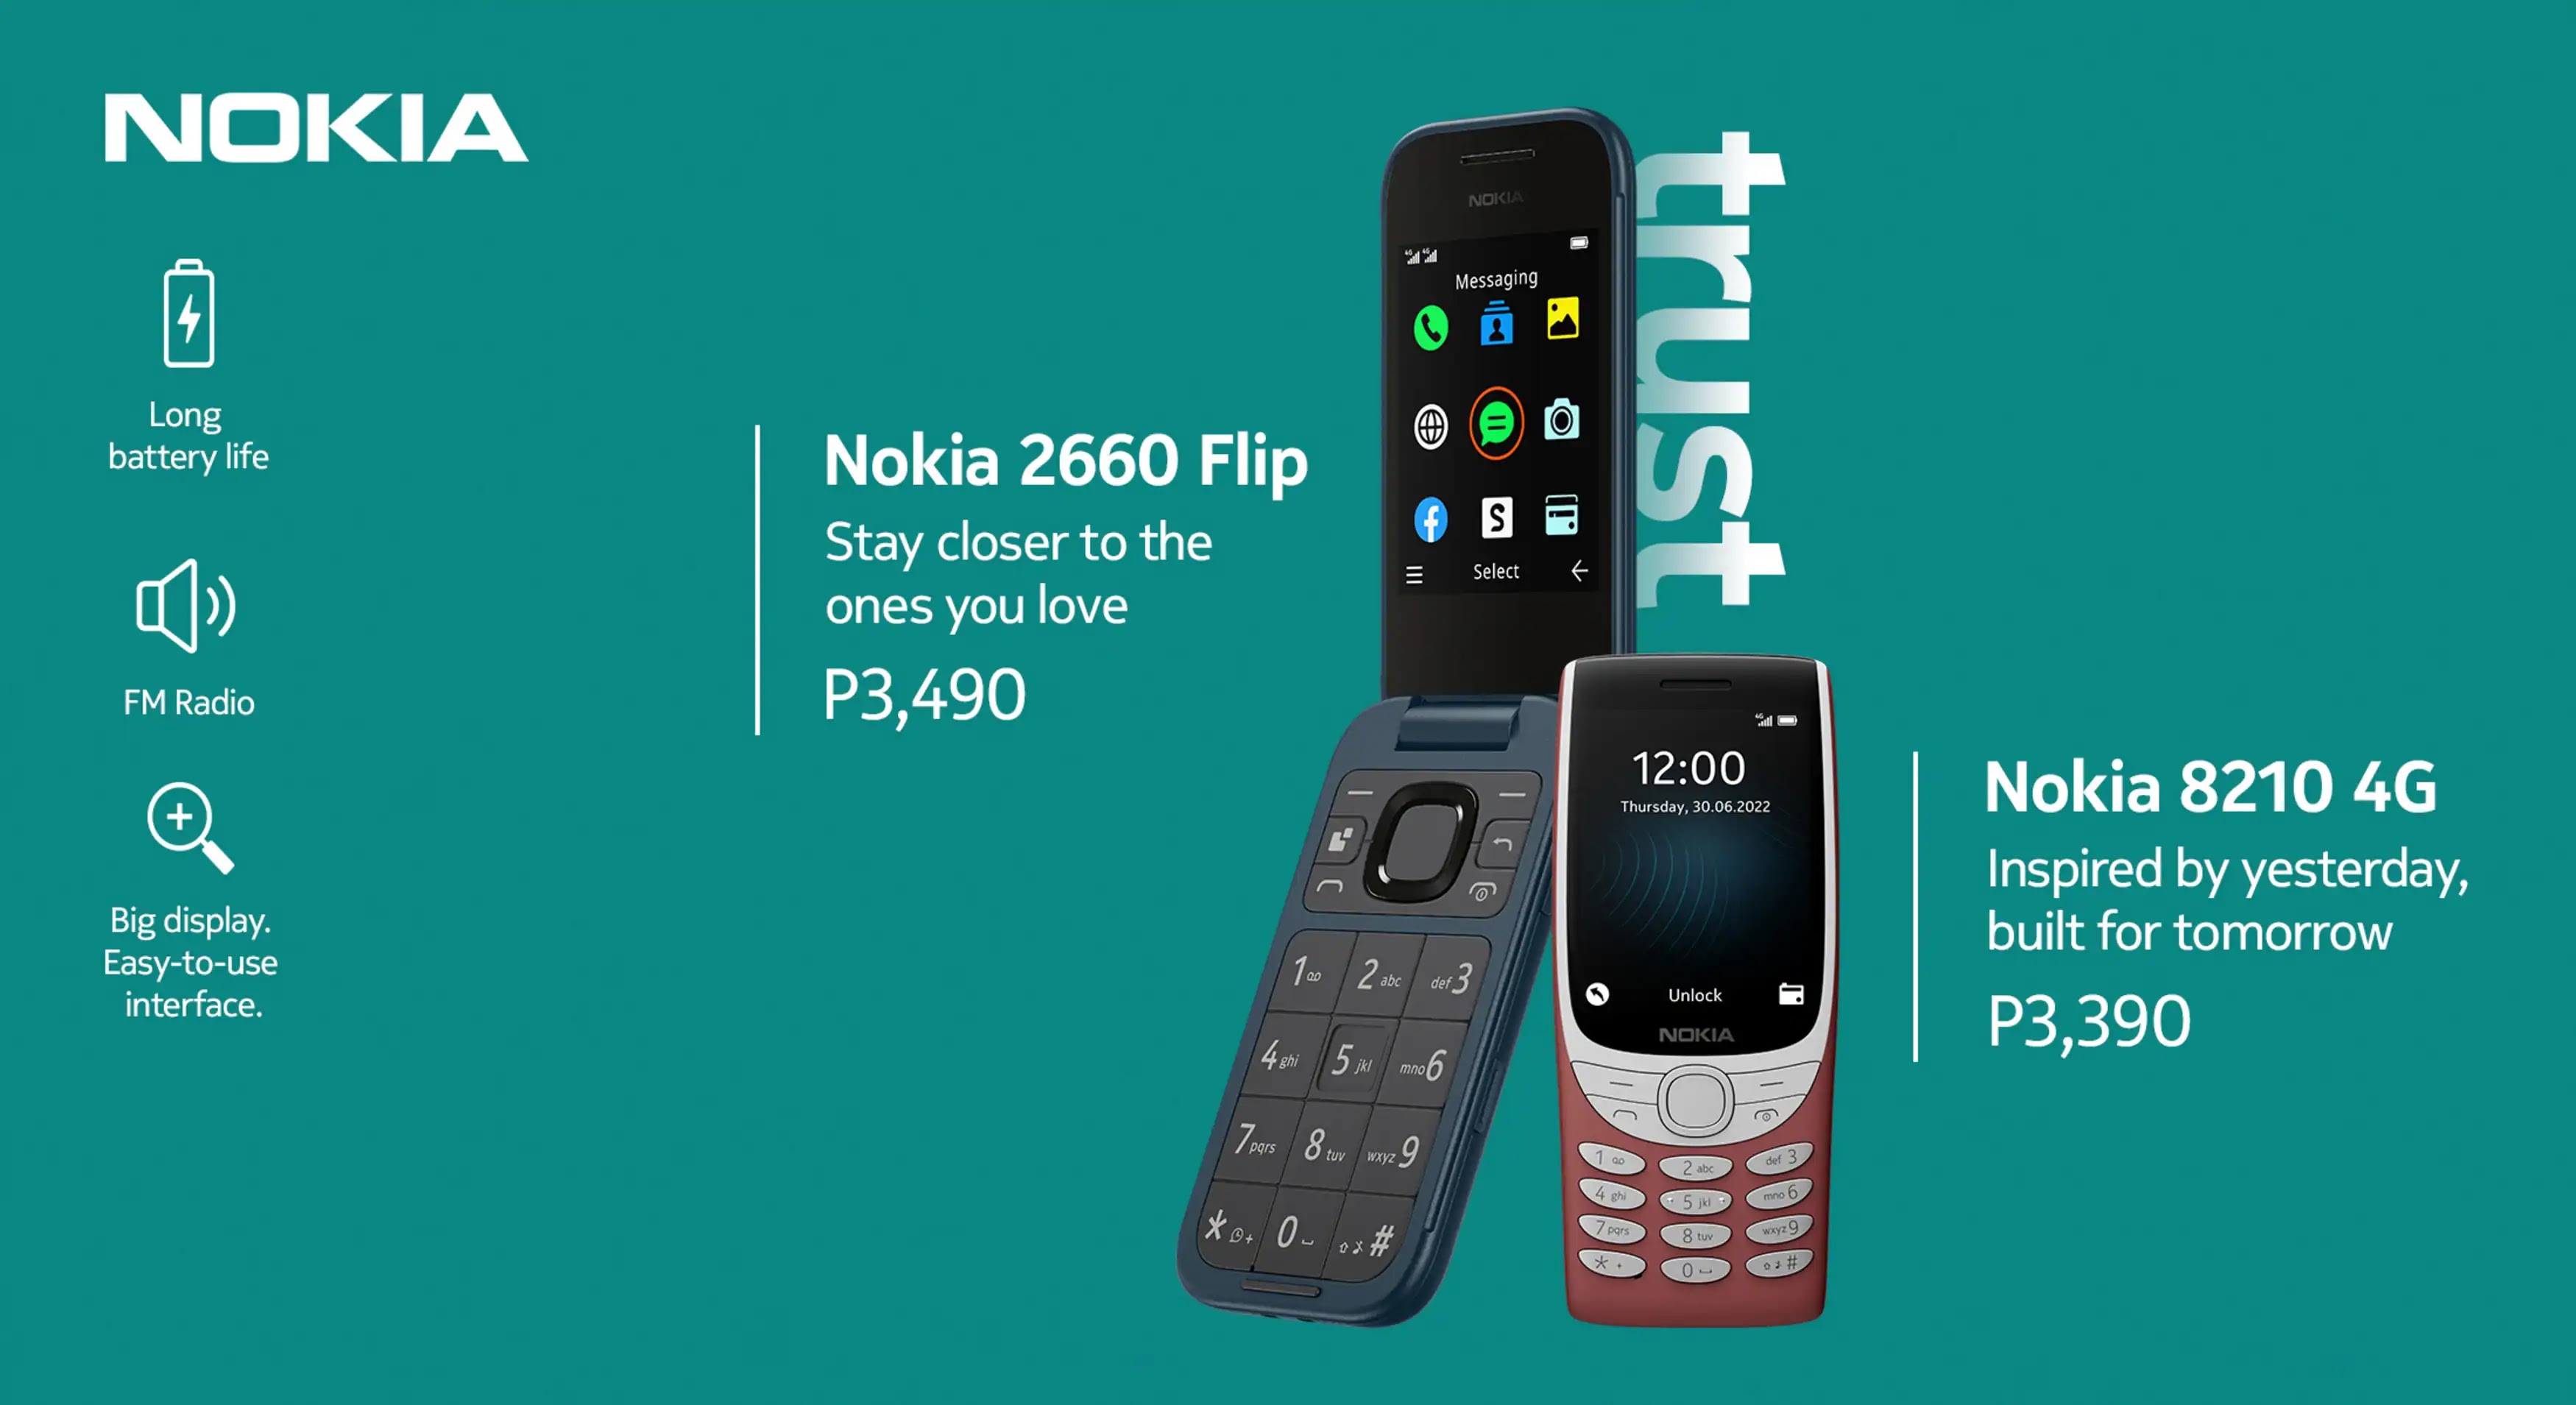 Nokia 2660 Flip and Nokia 8210 4G